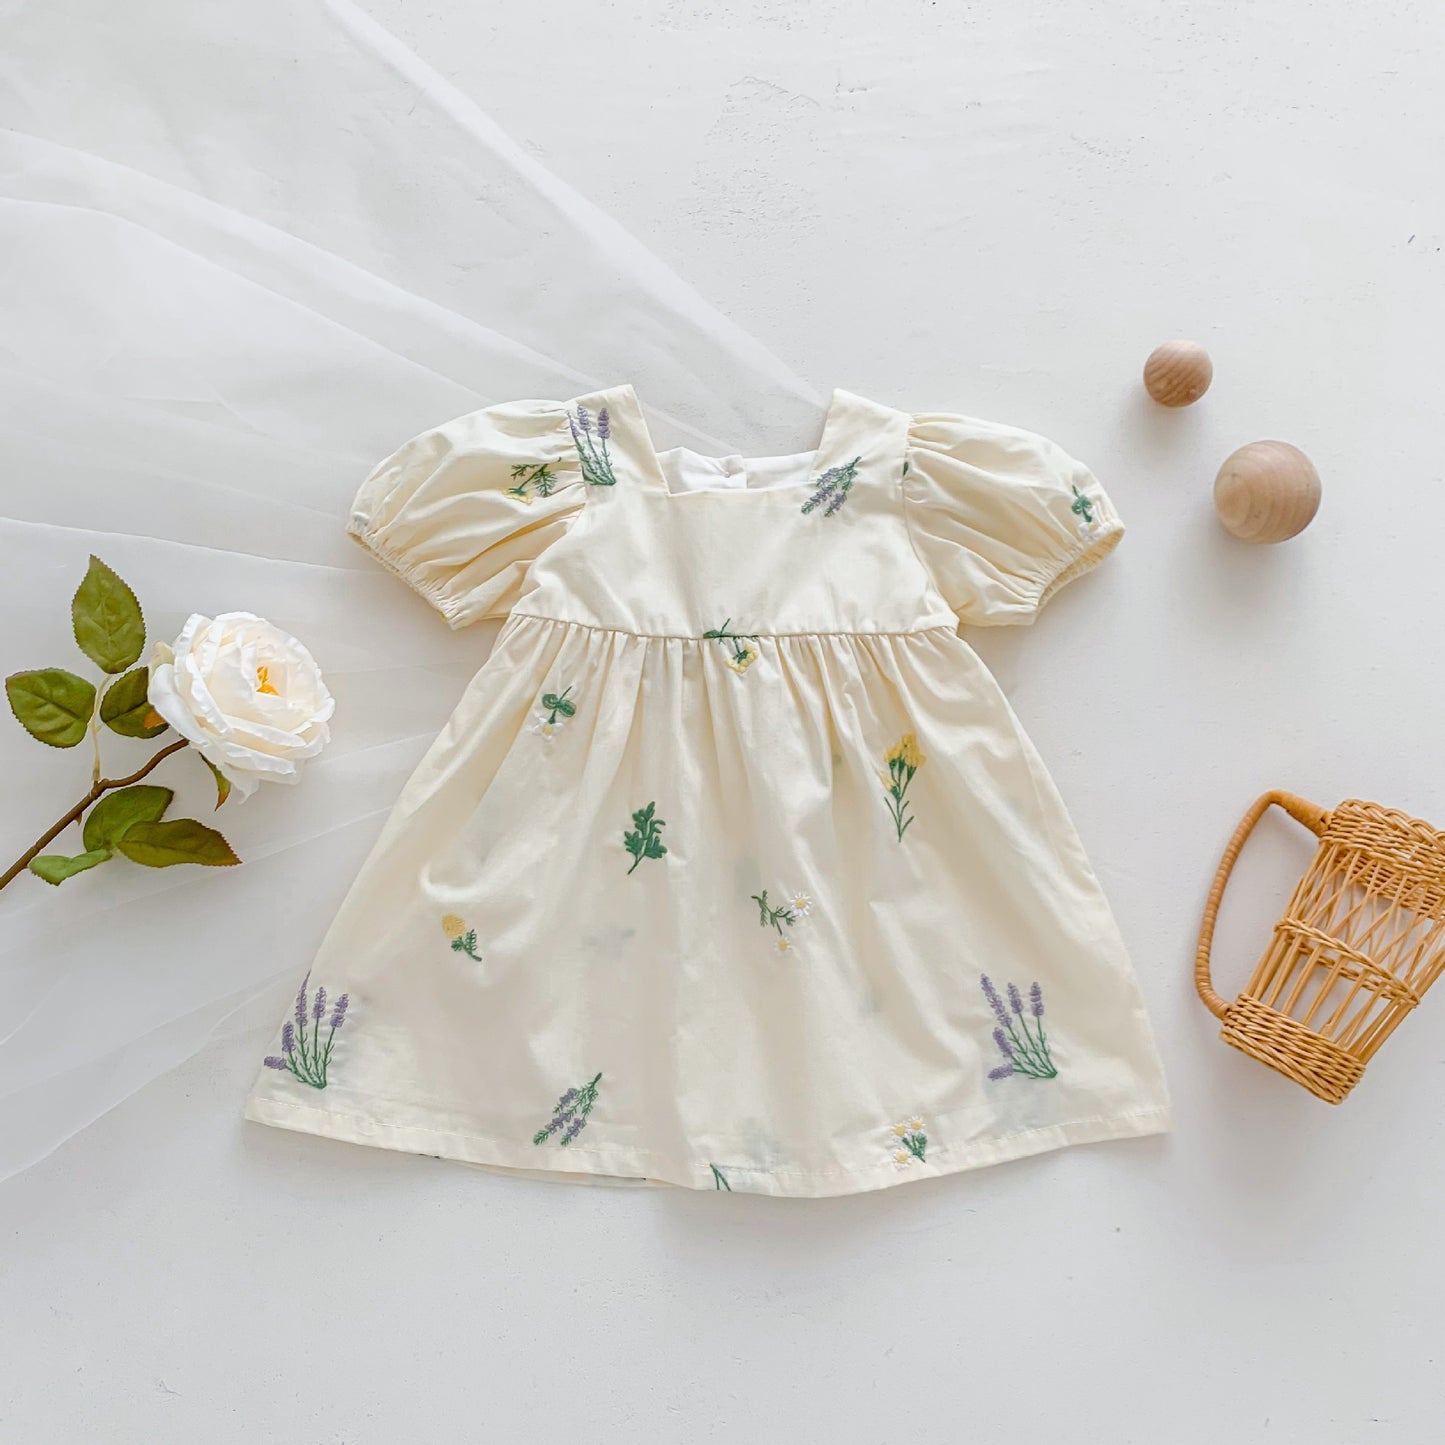 Matching embroidery dress